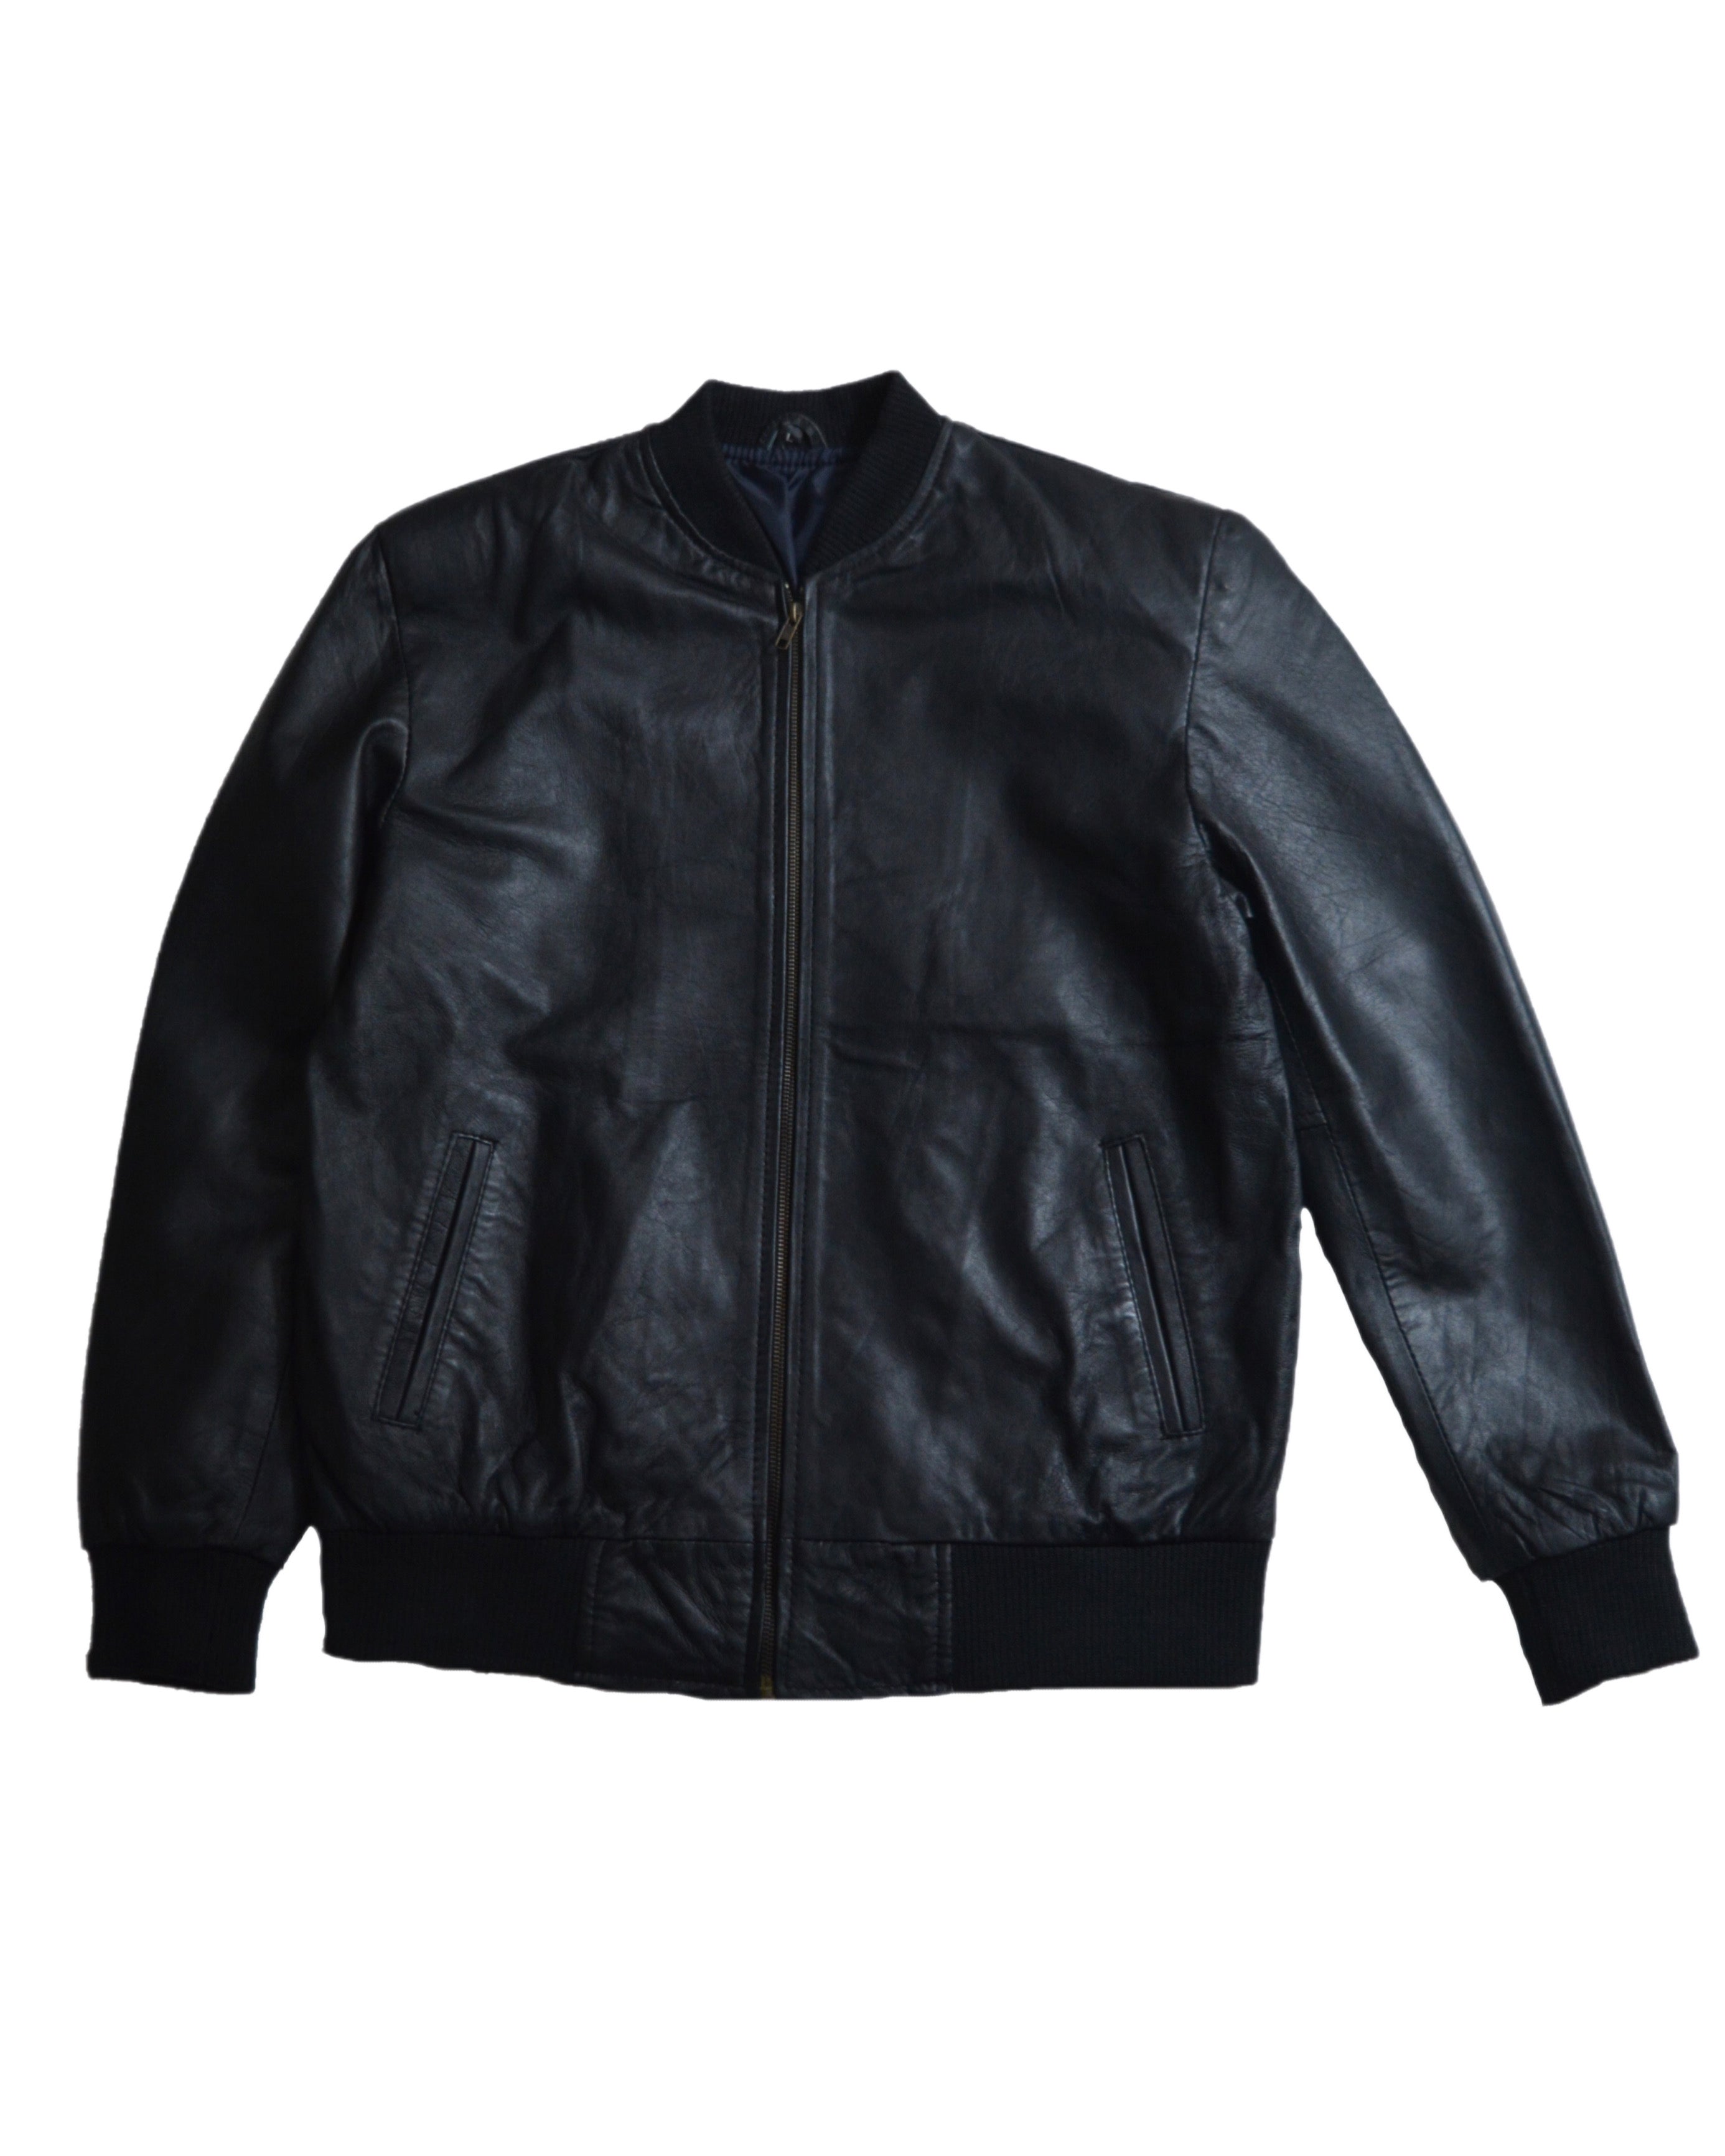 Genuine leather jacket sheep skin – Elar Leather